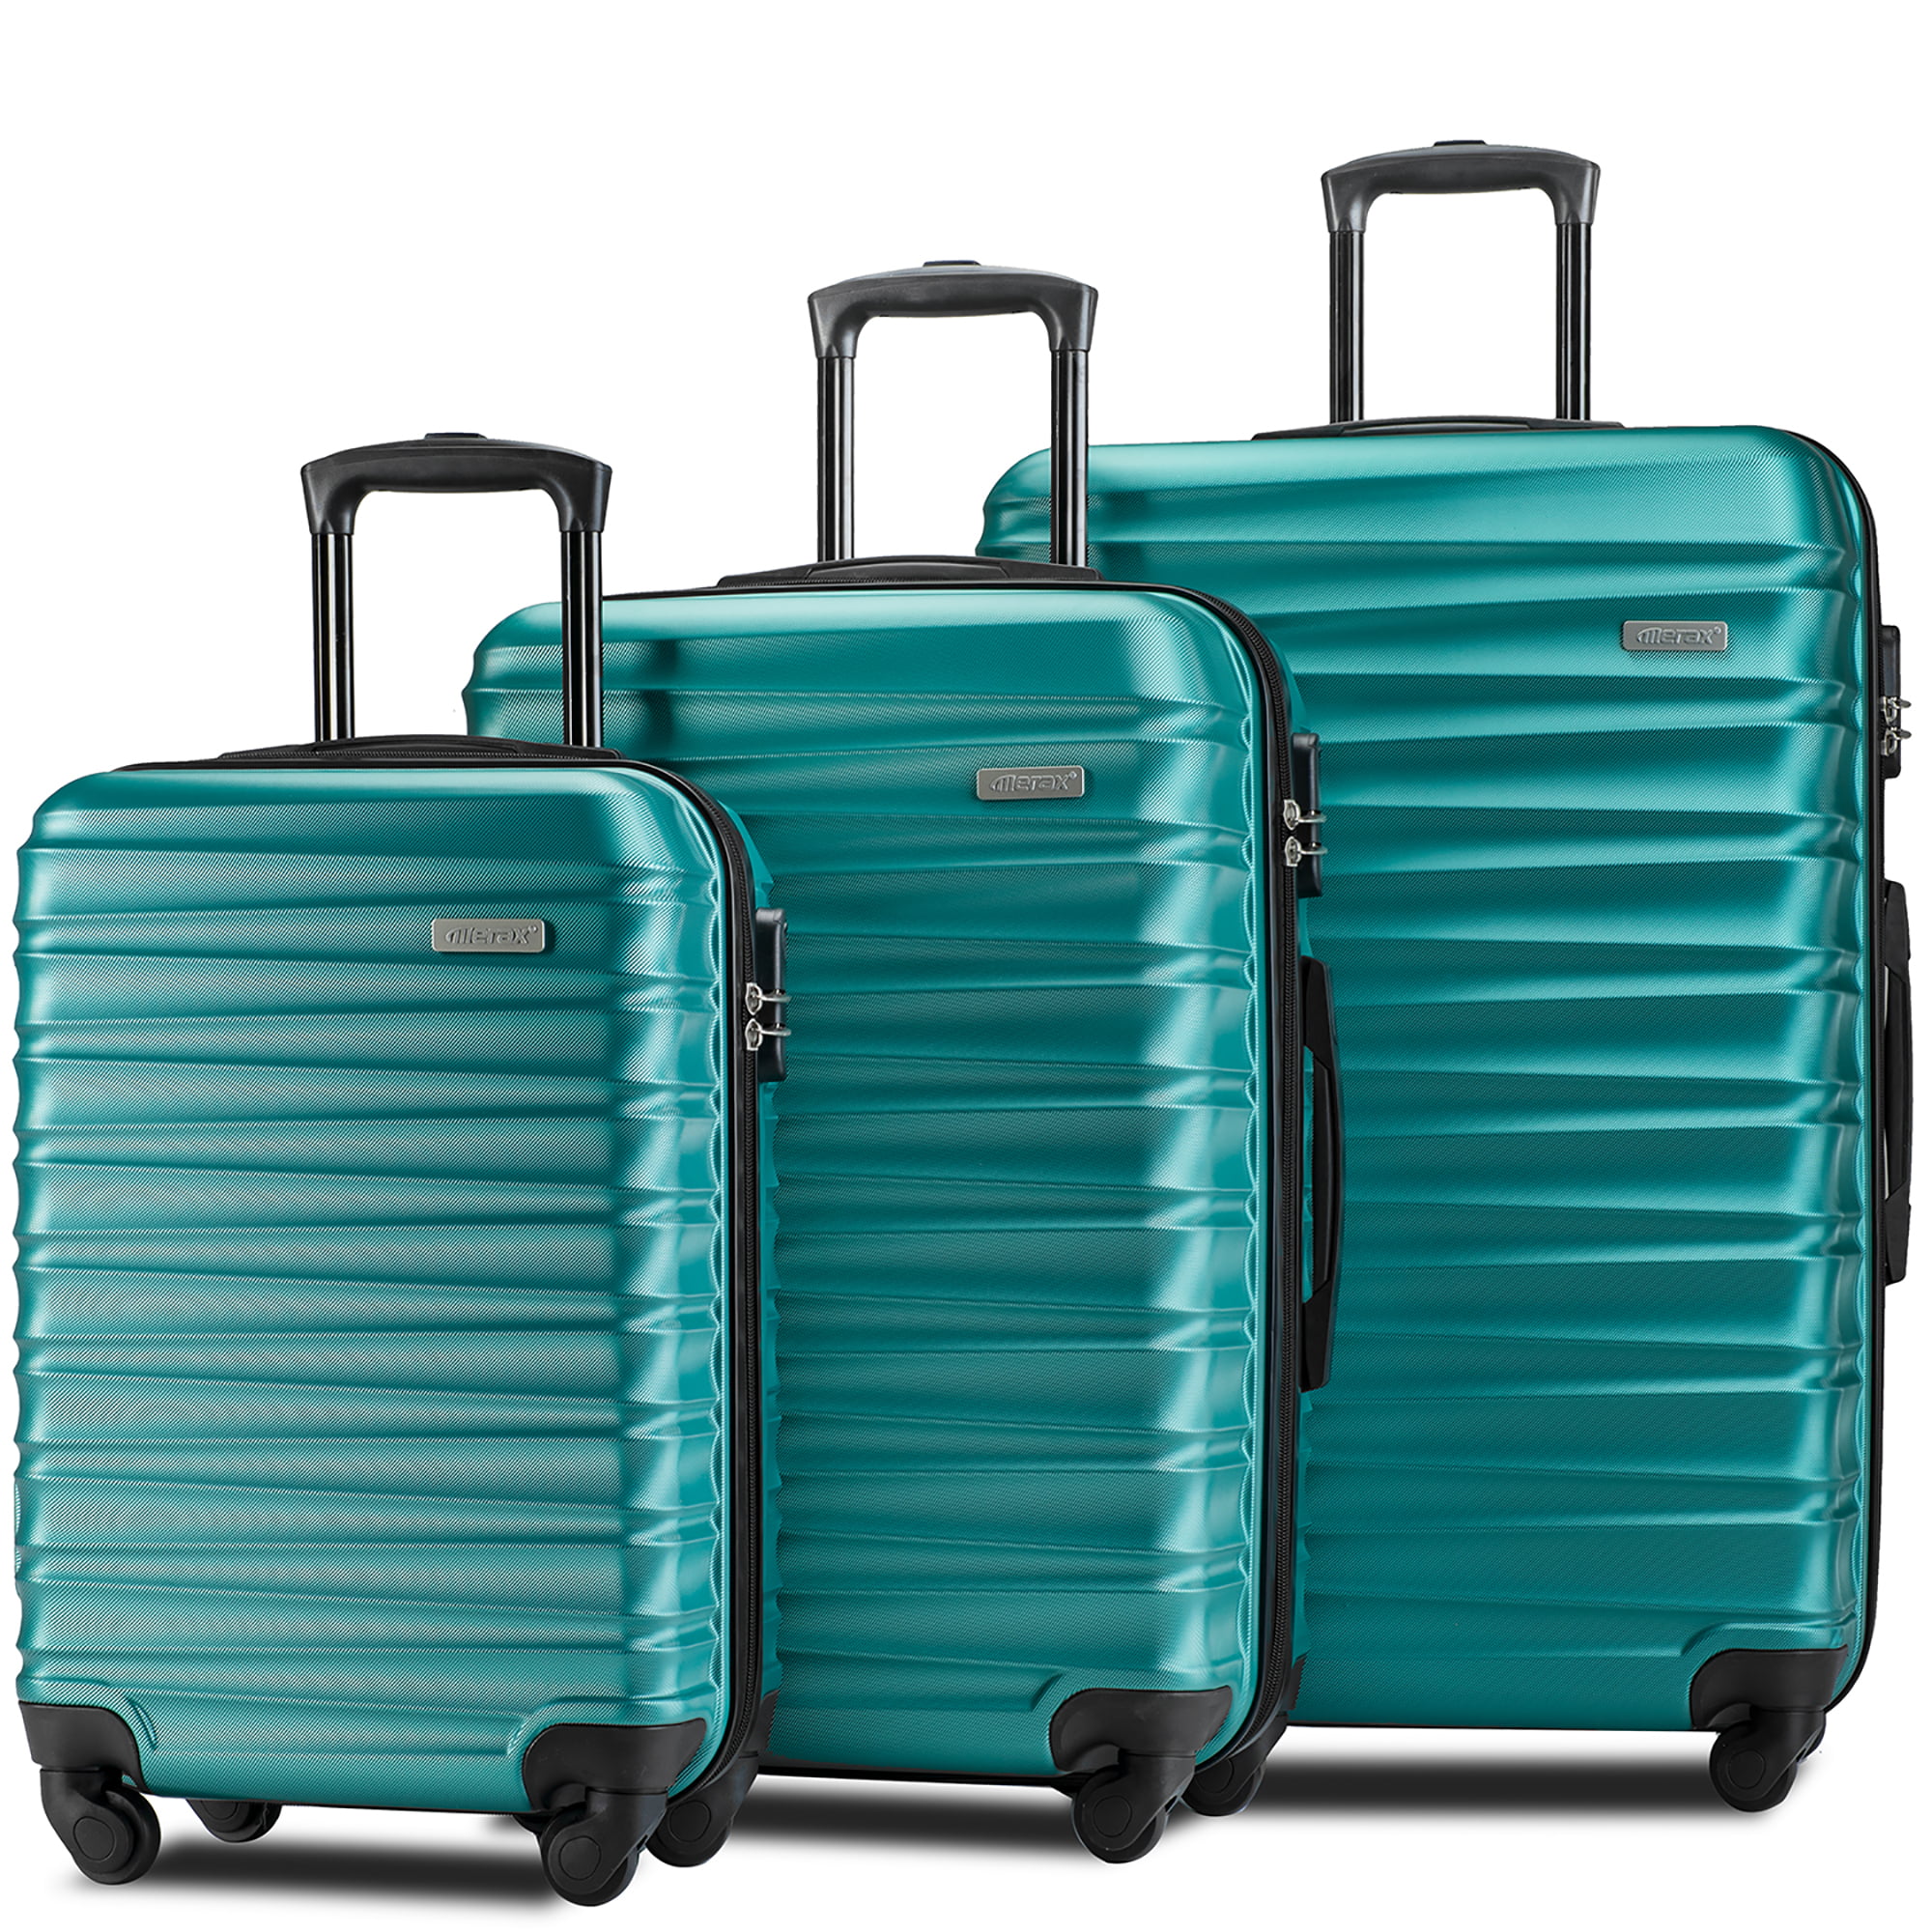 3 set travel luggage